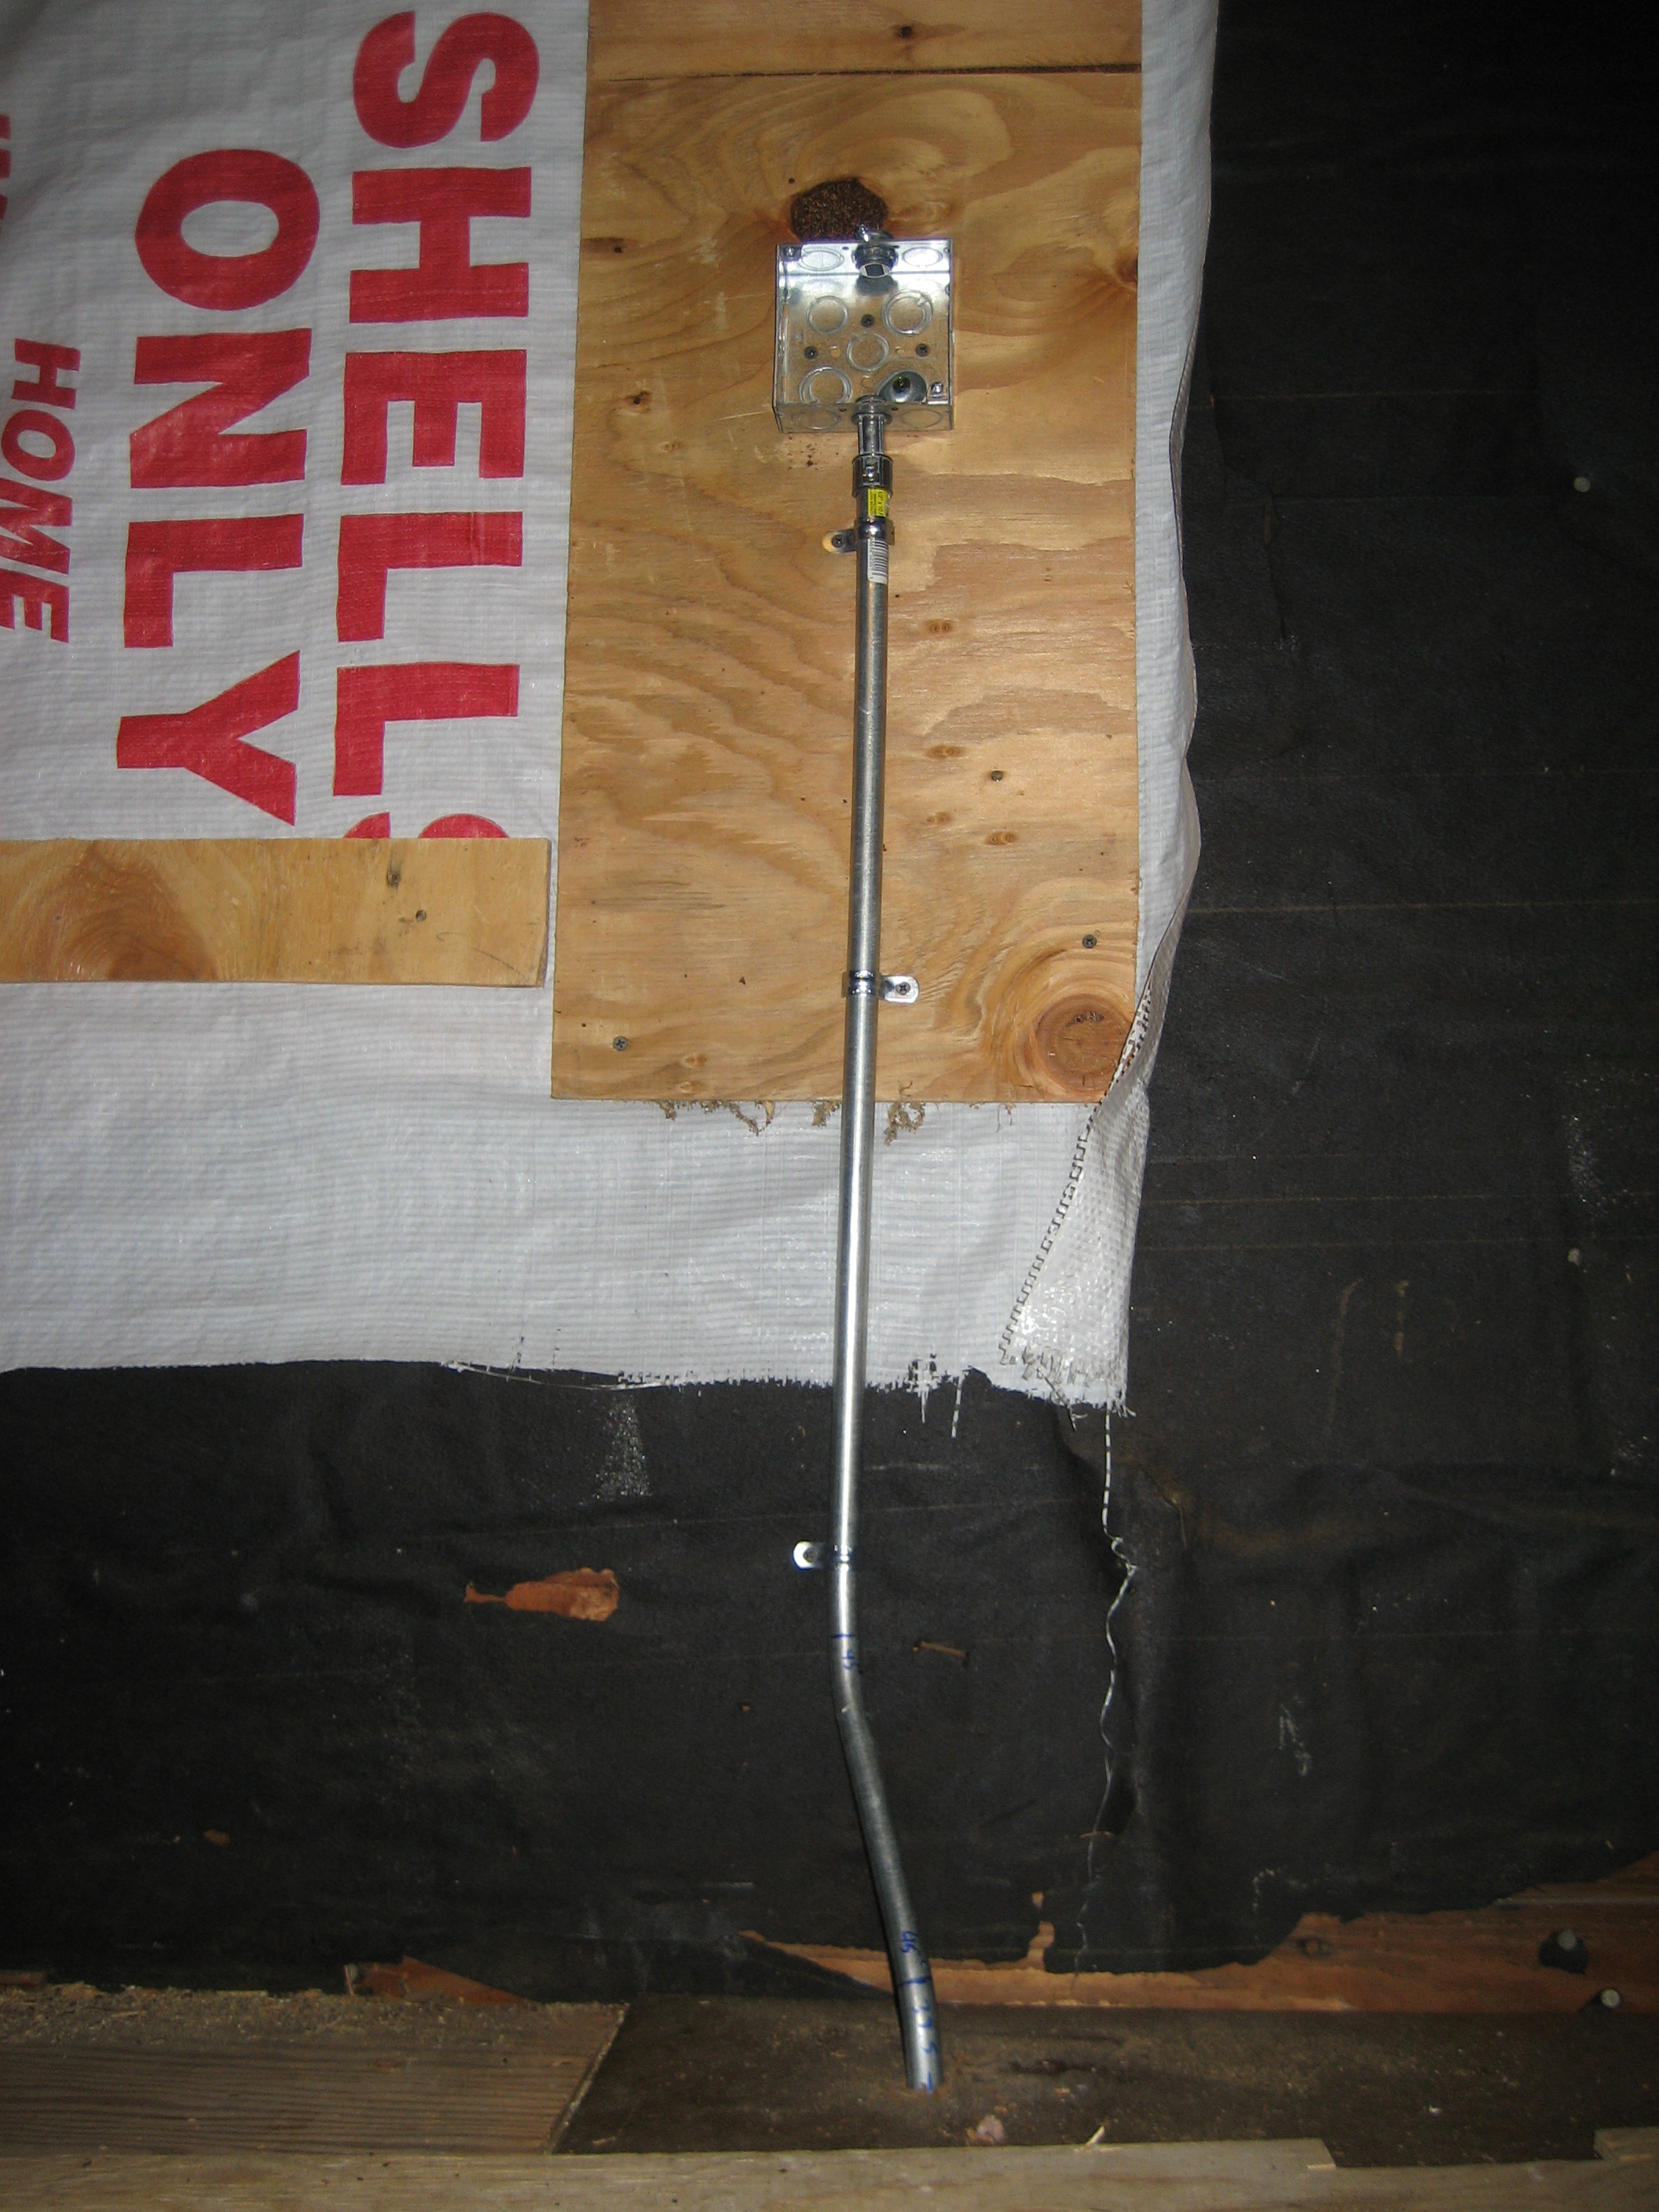 Sparky Charging - Phase I - EMT in garage attic